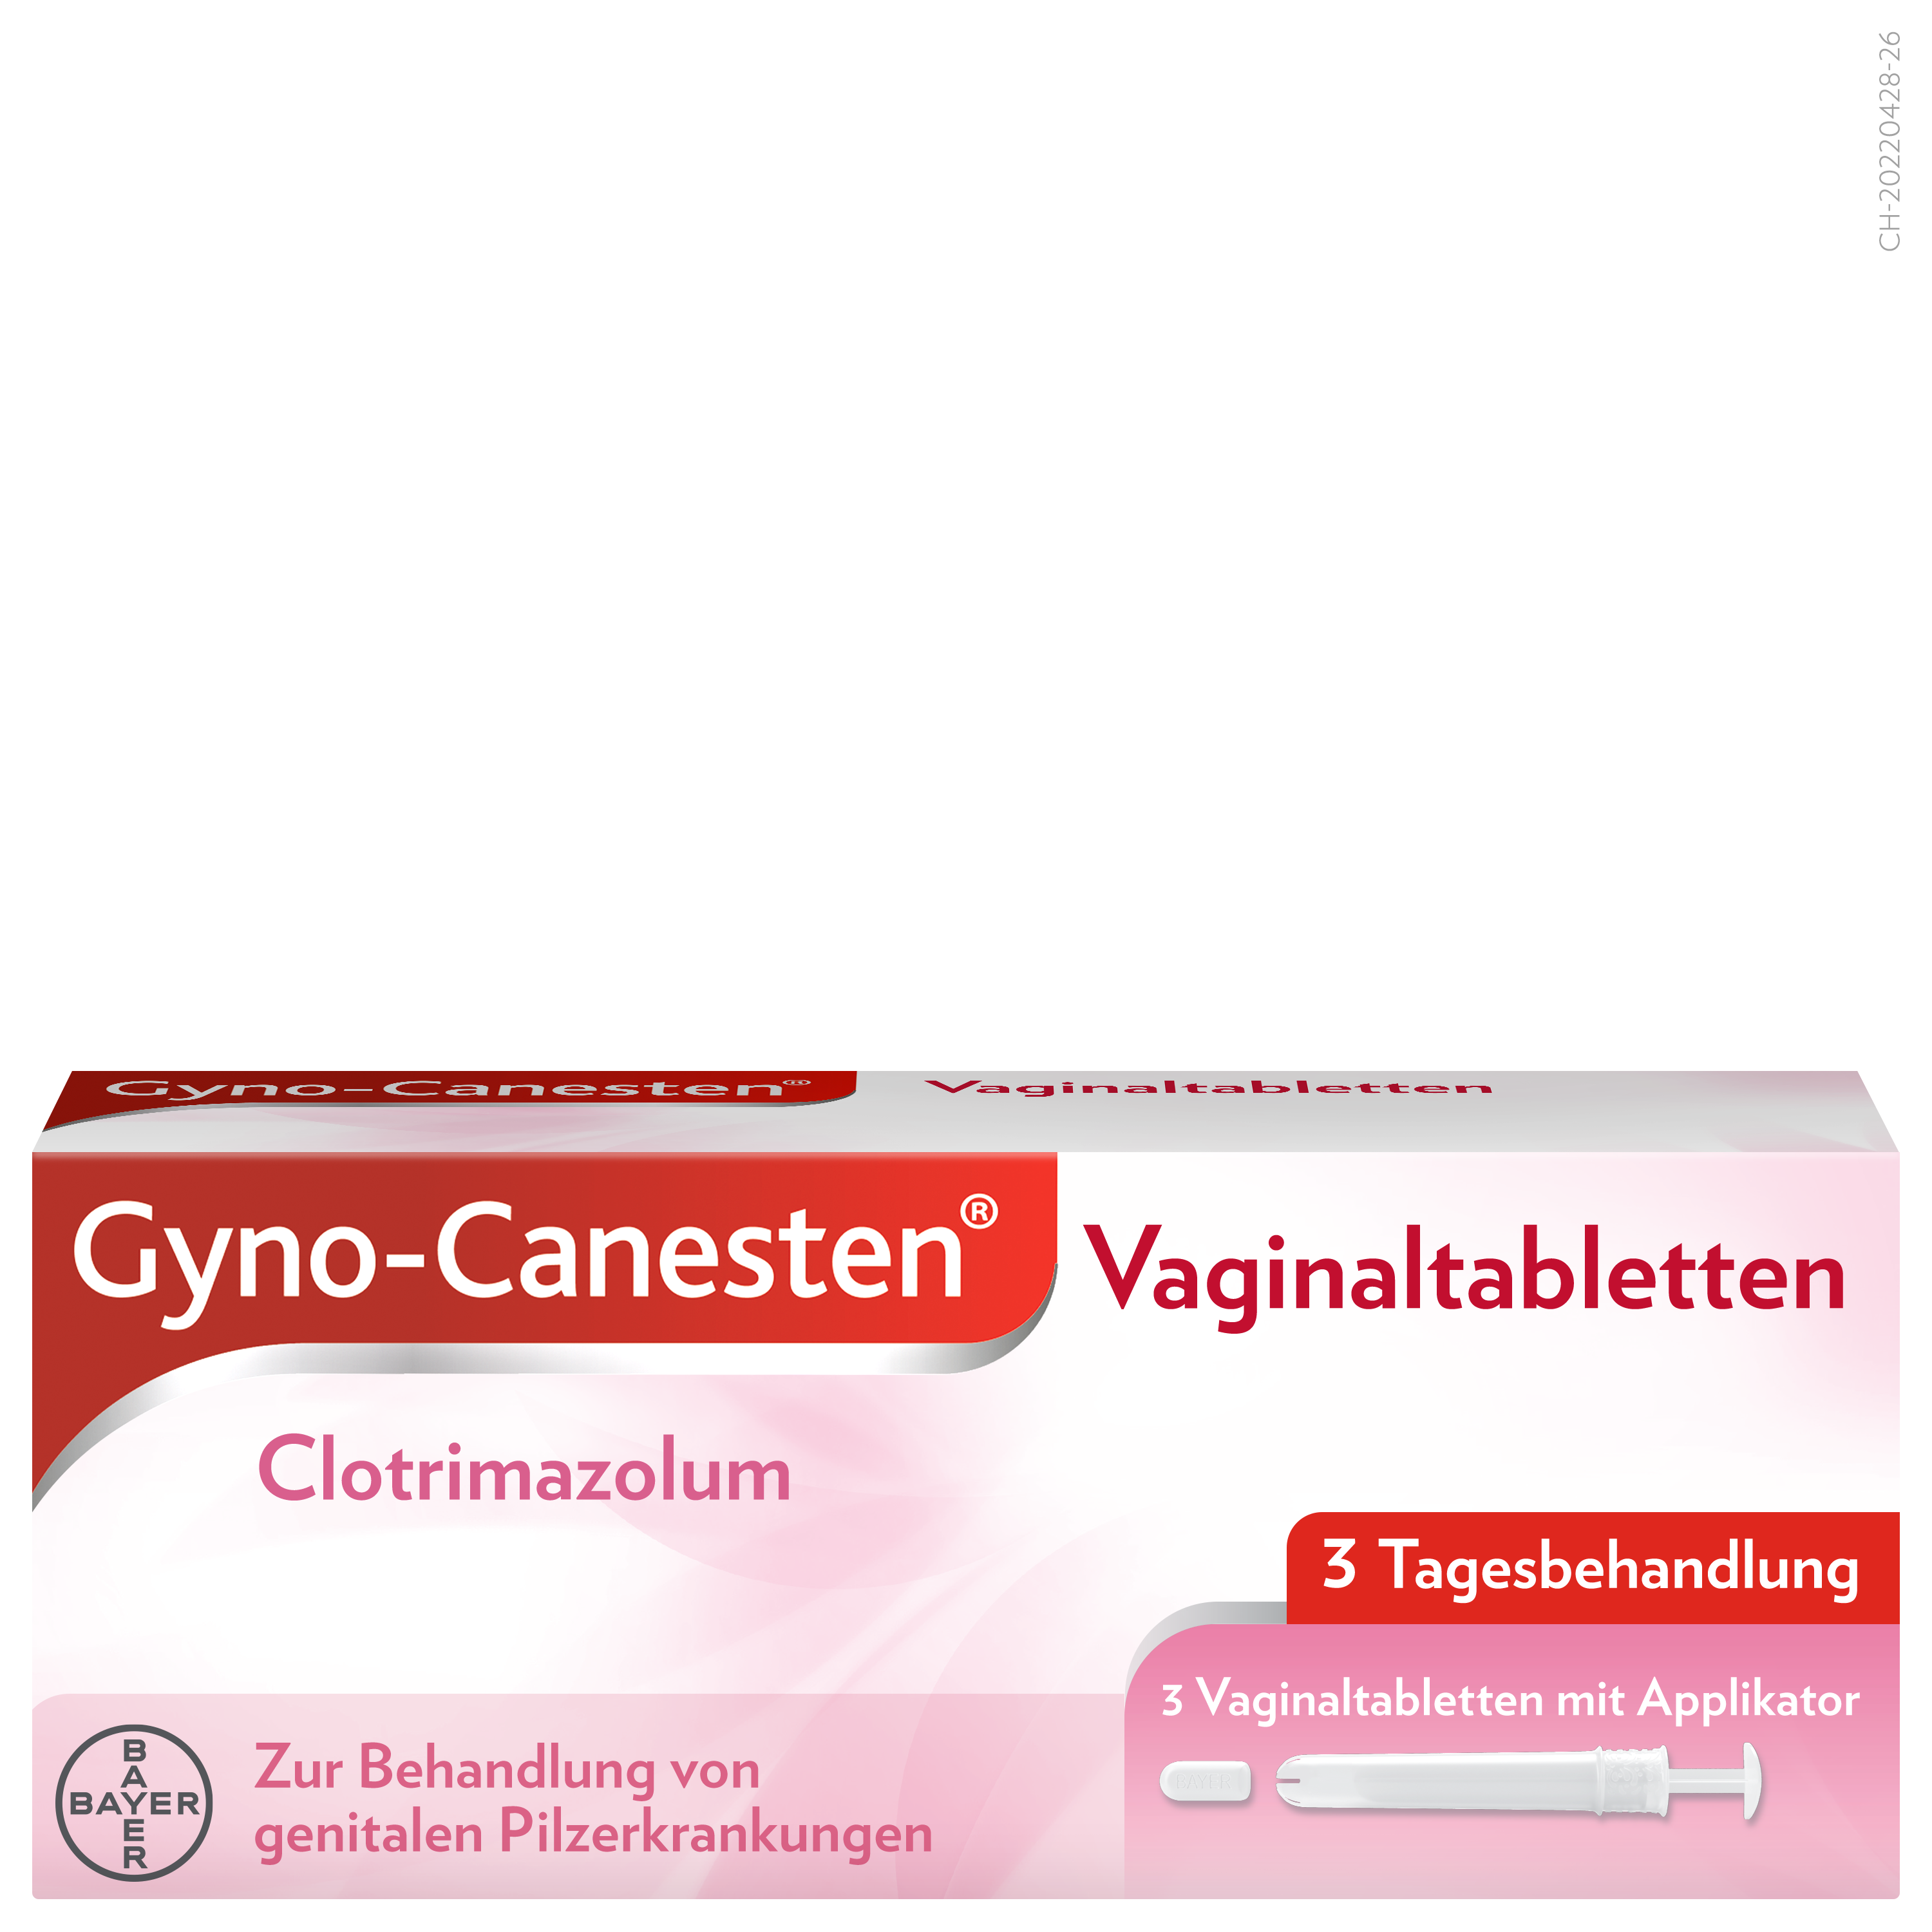 Gyno-Canesten Vag Tabl 200 mg 3 Stk jetzt bestellen